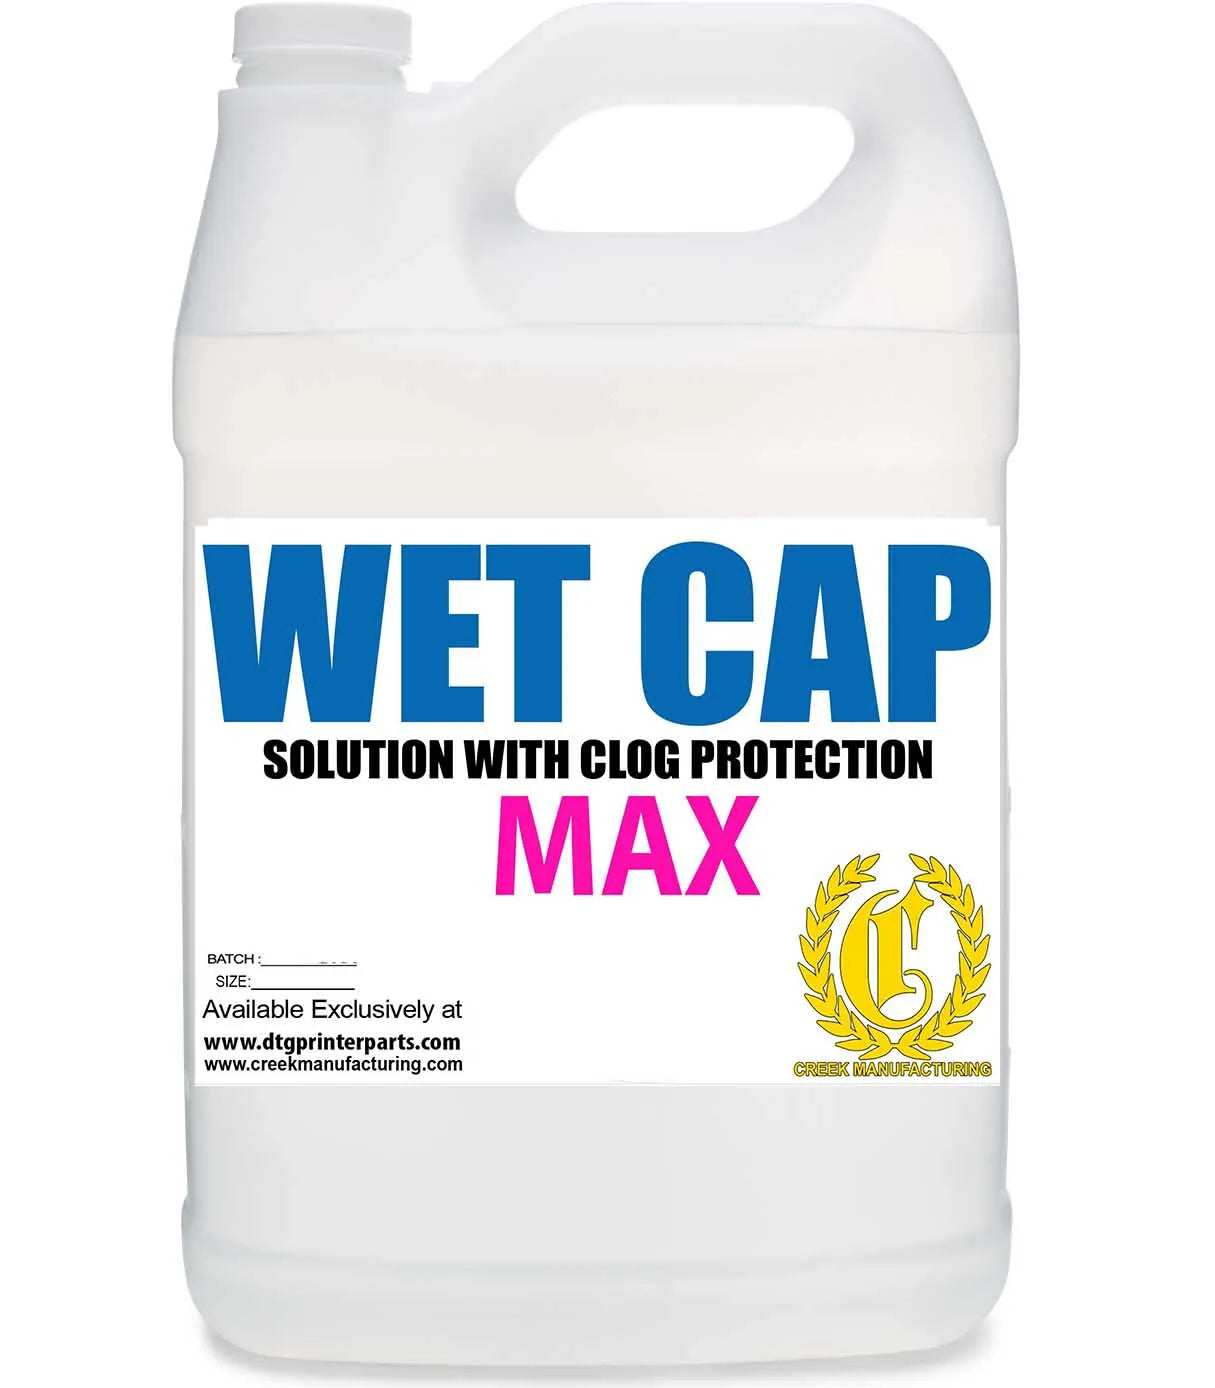 Wet Cap Max